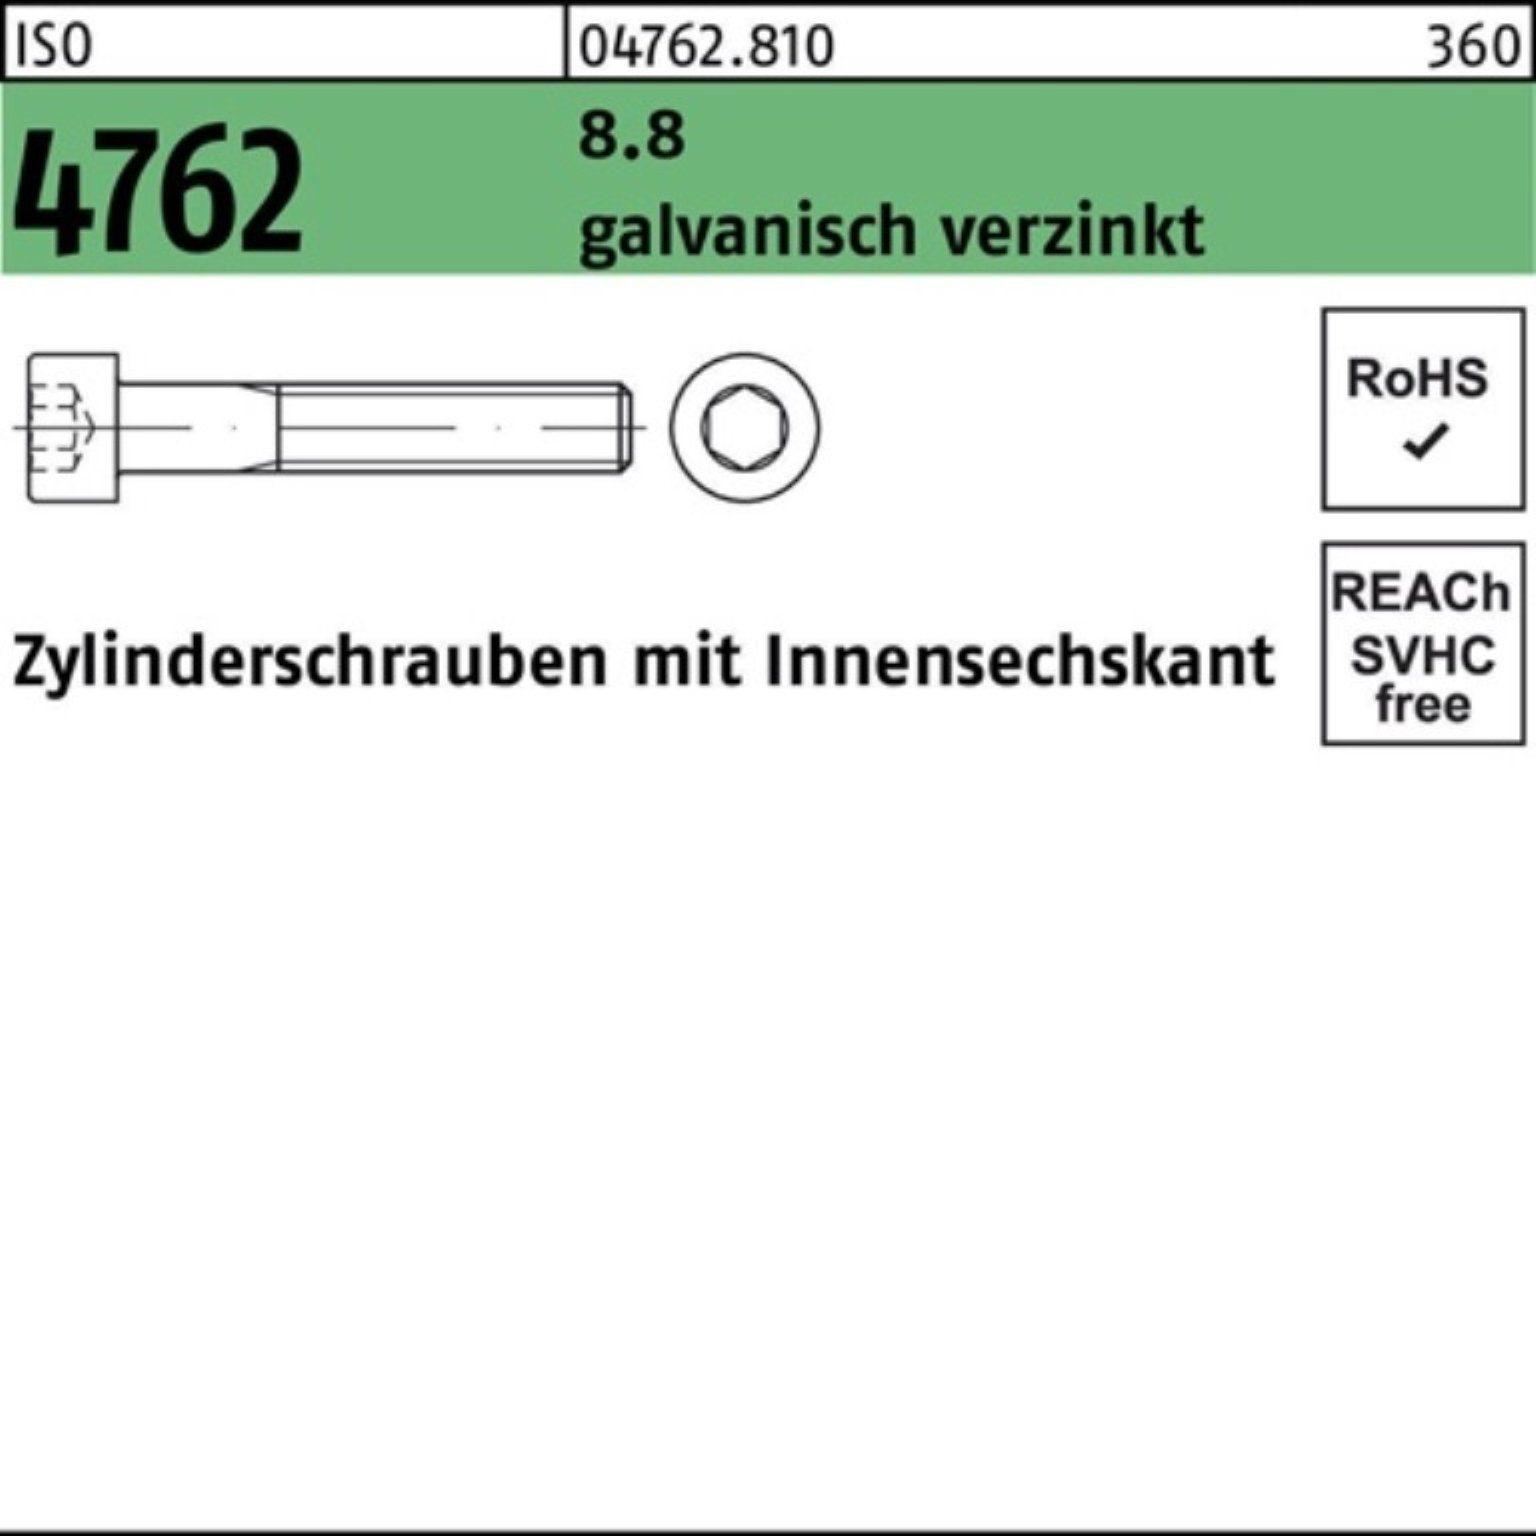 Pack Zylinderschraube 4762 Zylinderschraube Innen-6kt galv.verz. M24x260 ISO 8.8 100er Reyher